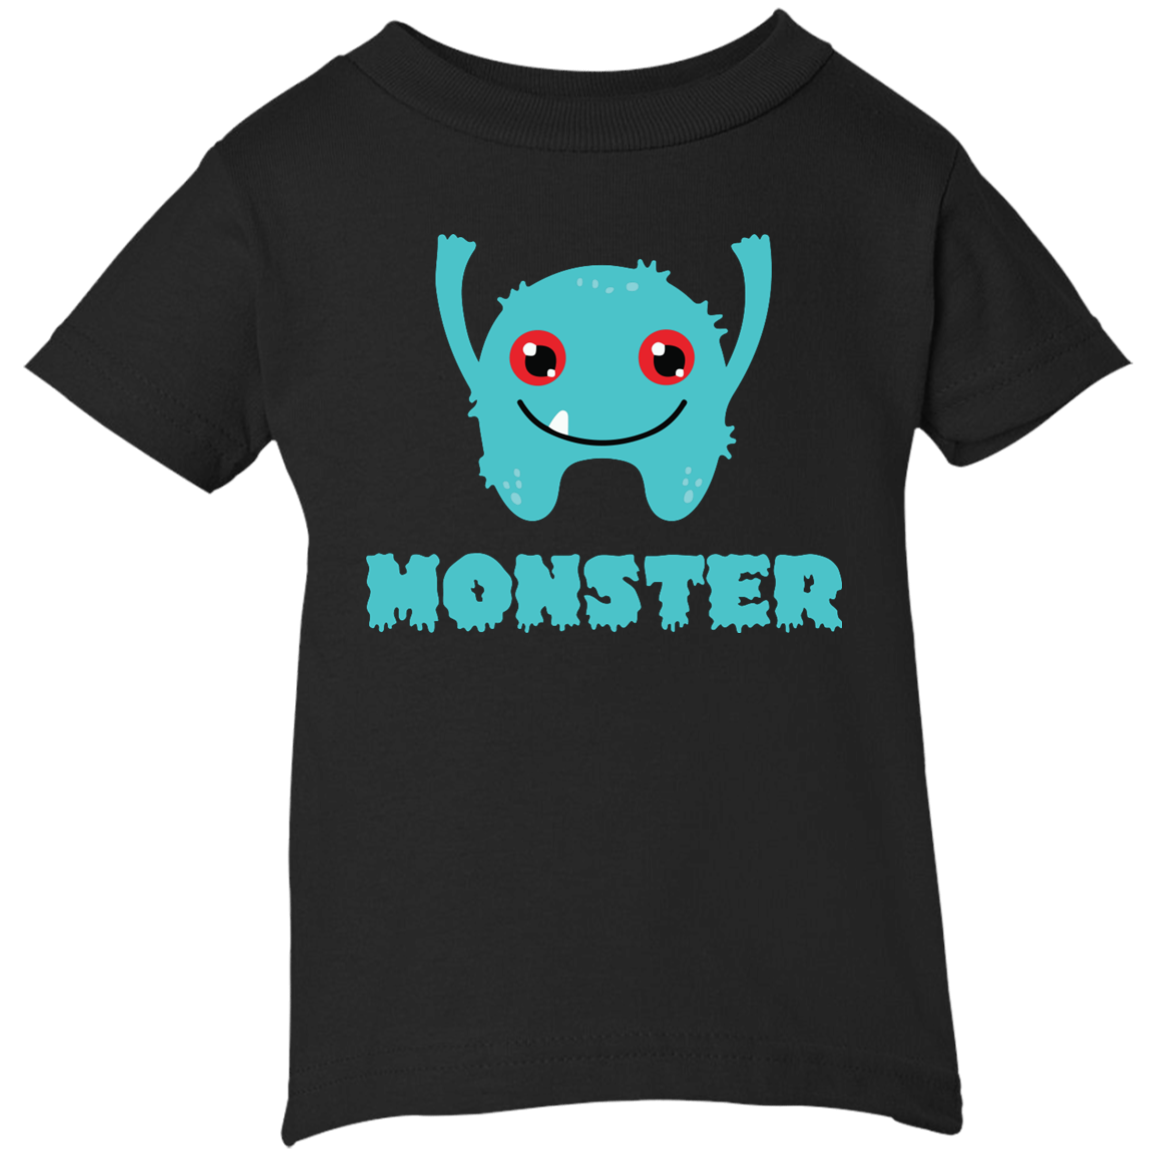 Monster shirt for Toddler, Infant